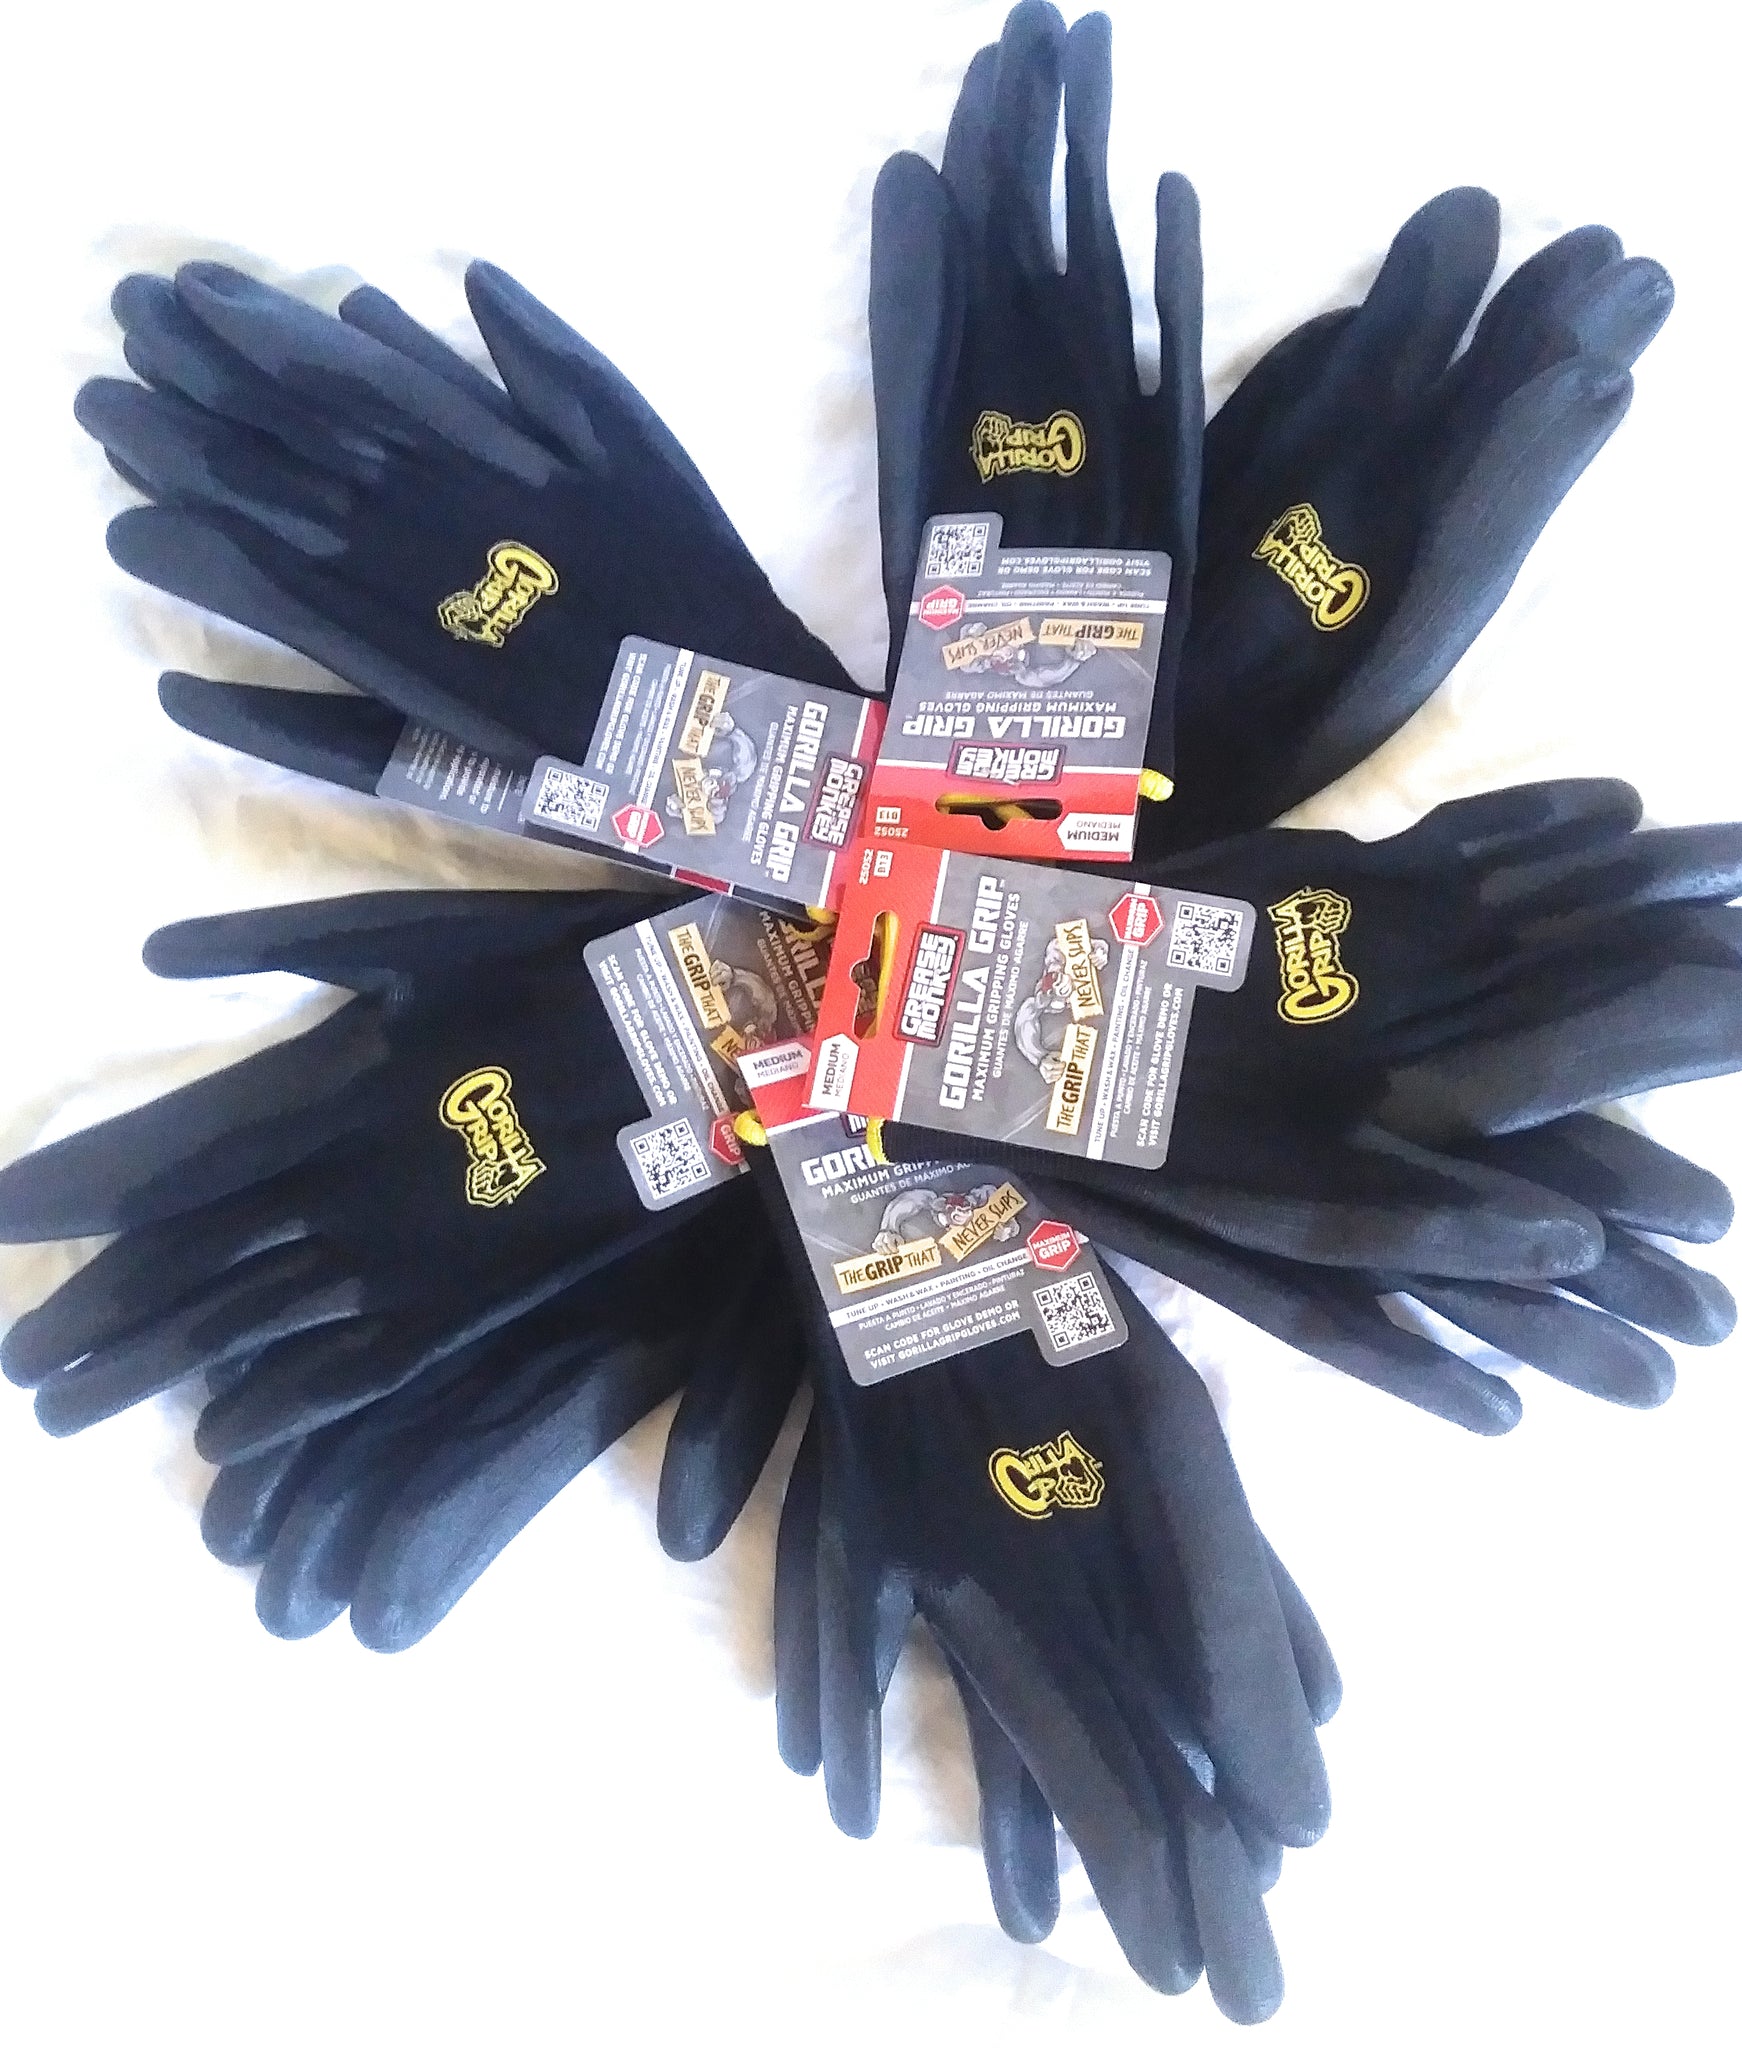 Grease Monkey Gorilla Gripping Men's Gloves — Black, XL